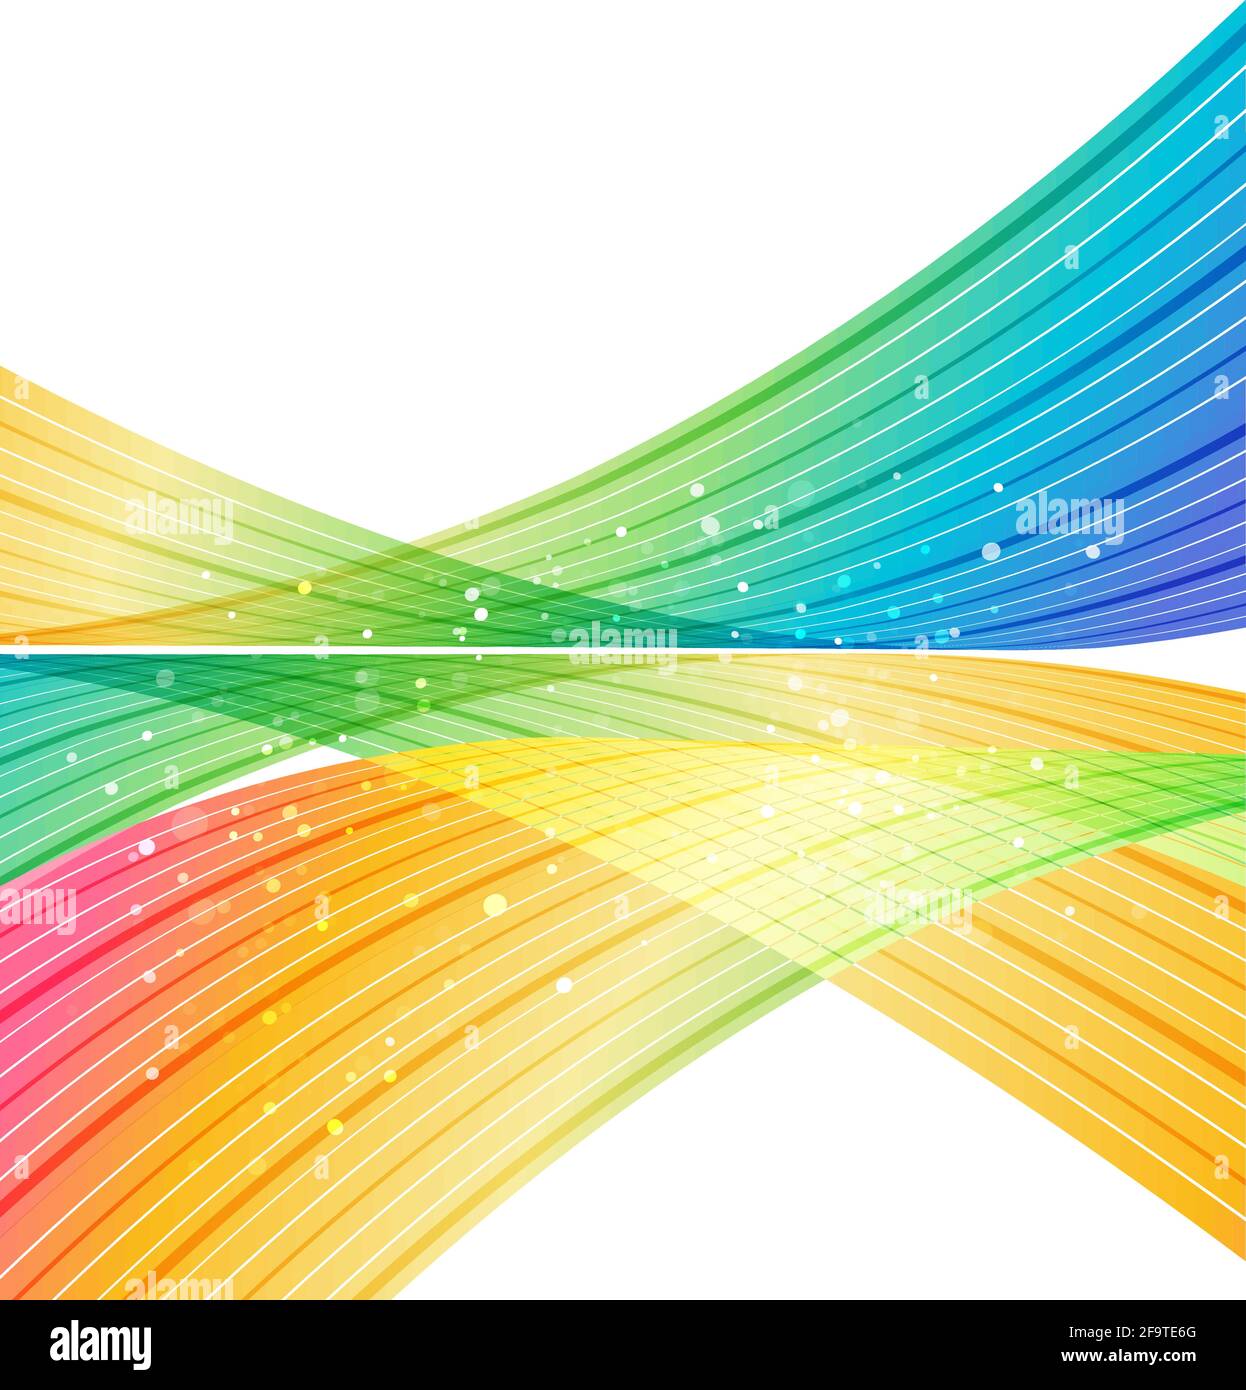 Adesivo Primo piano di strisce di sabbia colorata arcobaleno e spazio di  copia su sfondo bianco 